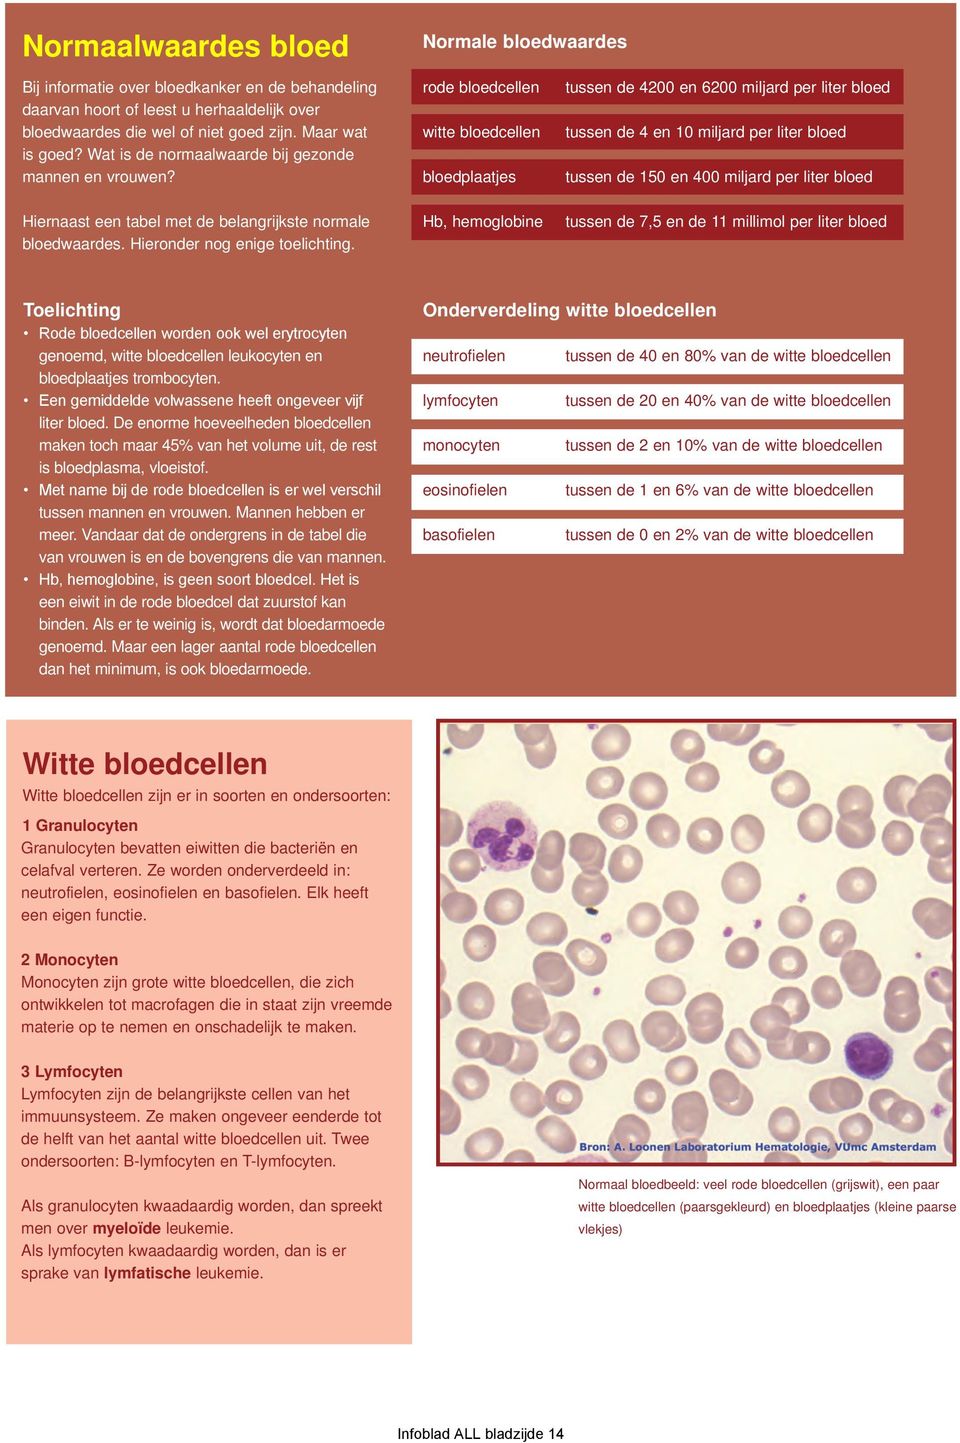 rode bloedcellen witte bloedcellen bloedplaatjes tussen de 4200 en 6200 miljard per liter bloed tussen de 4 en 10 miljard per liter bloed tussen de 150 en 400 miljard per liter bloed Hiernaast een